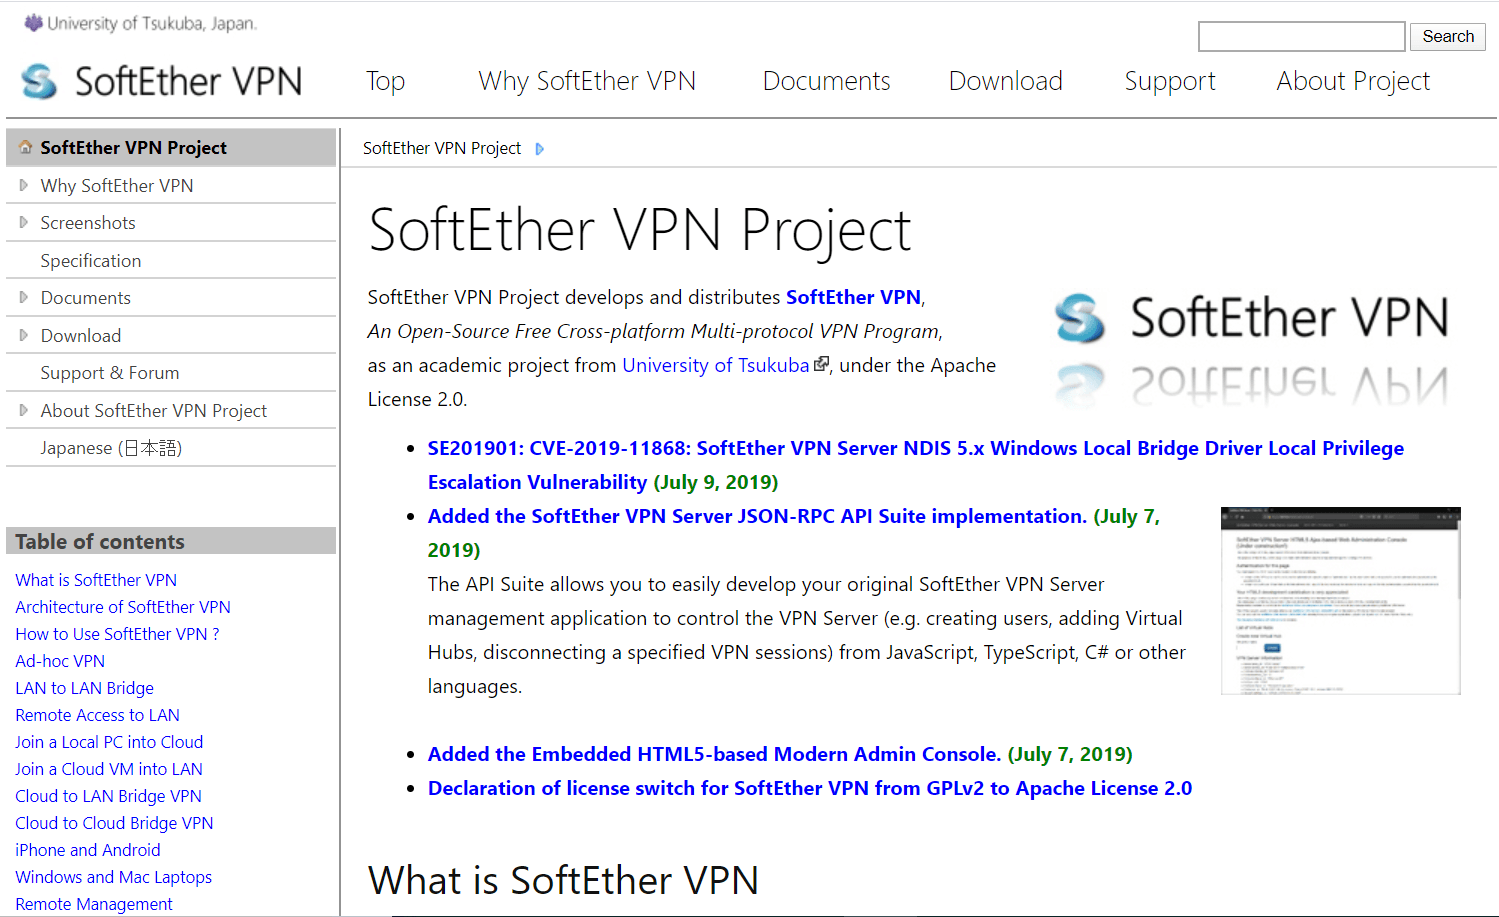 सफ्टेथर VPN